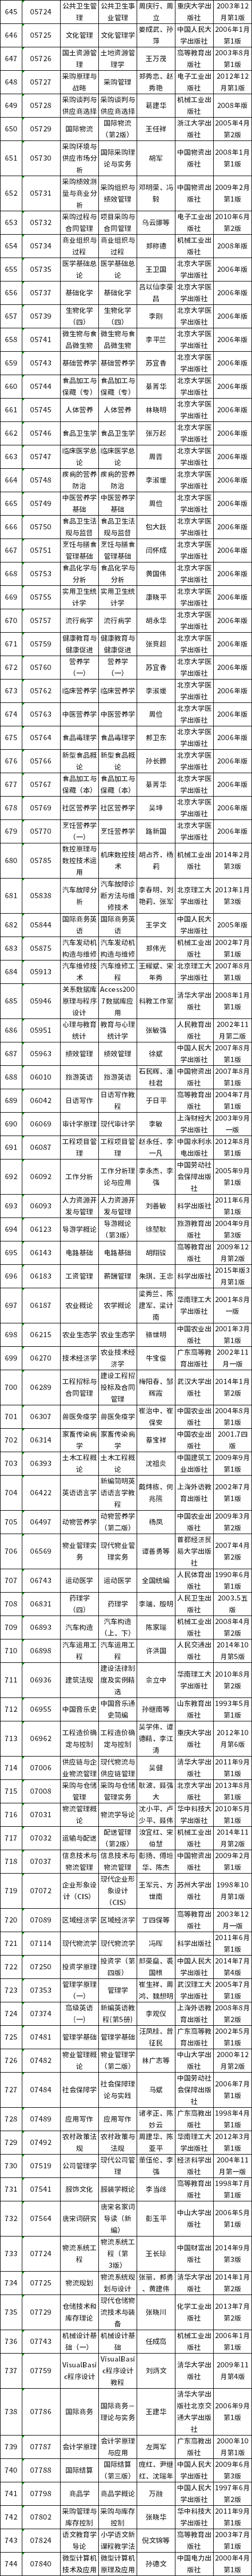 廣東省自考開考課程使用教材表